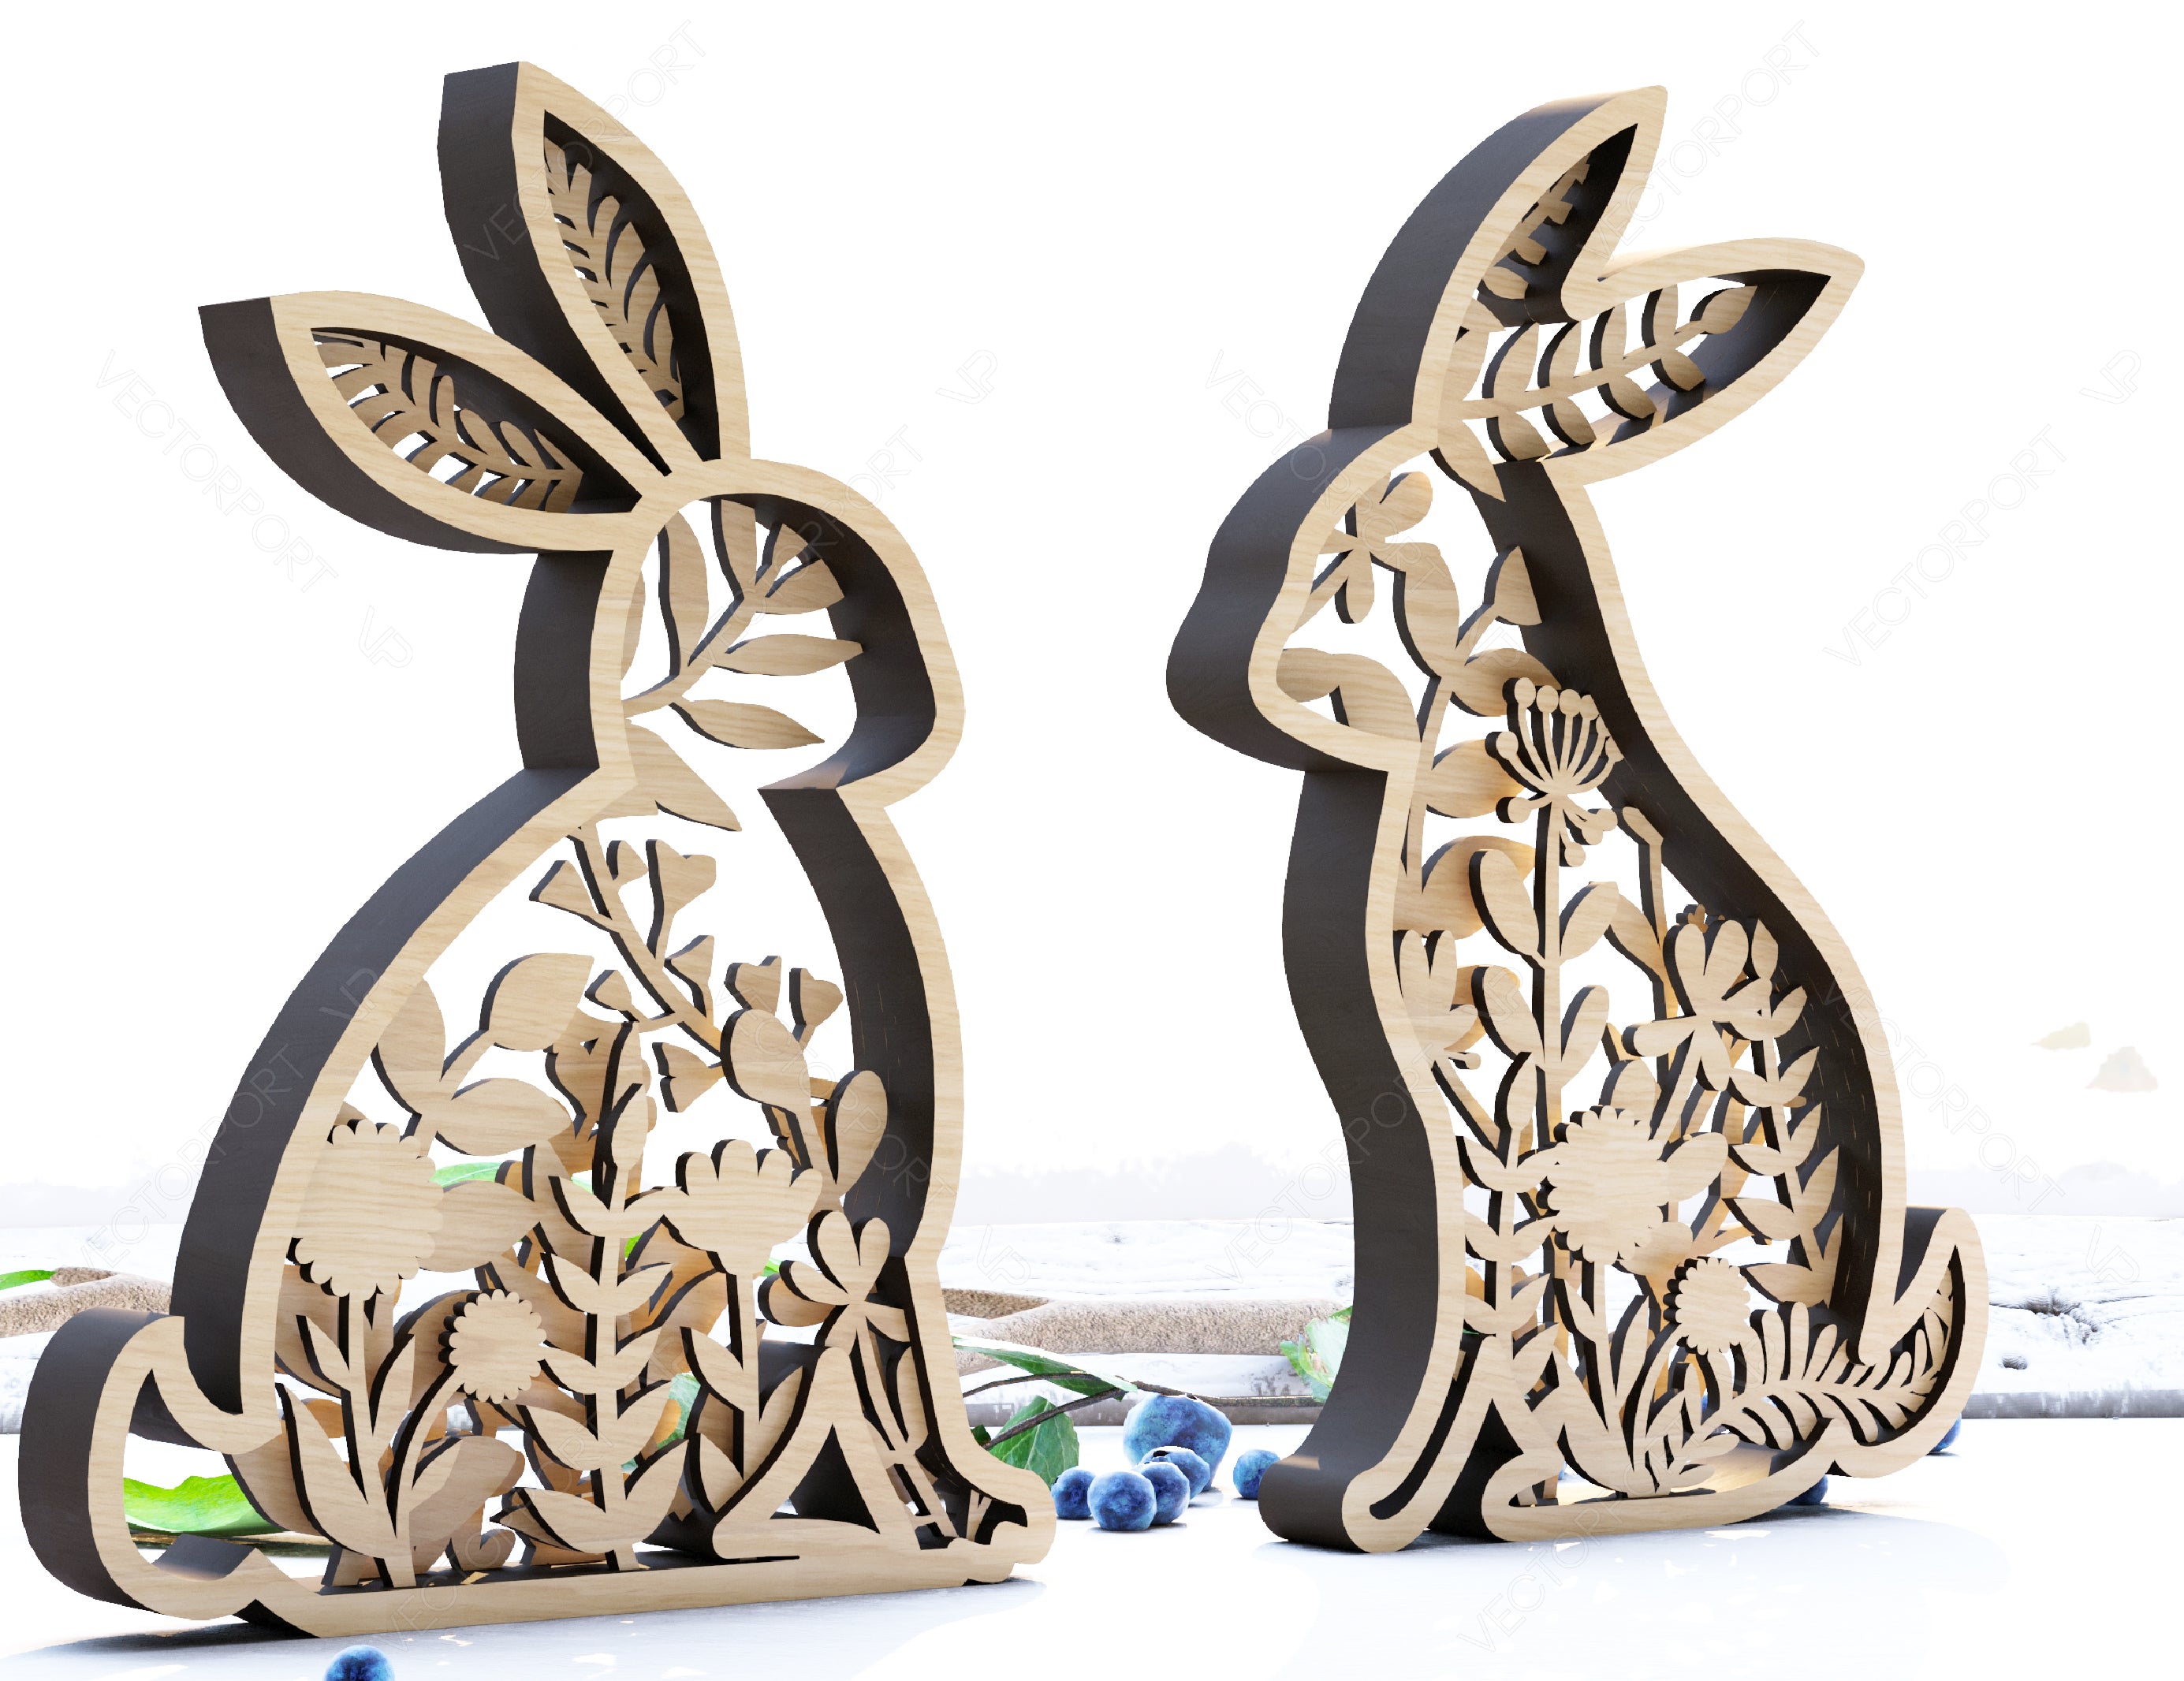 Easter Laser Cut Files Rabbits SVG layered bundle, Floral Bunny multilayer Digital Download |#U187|